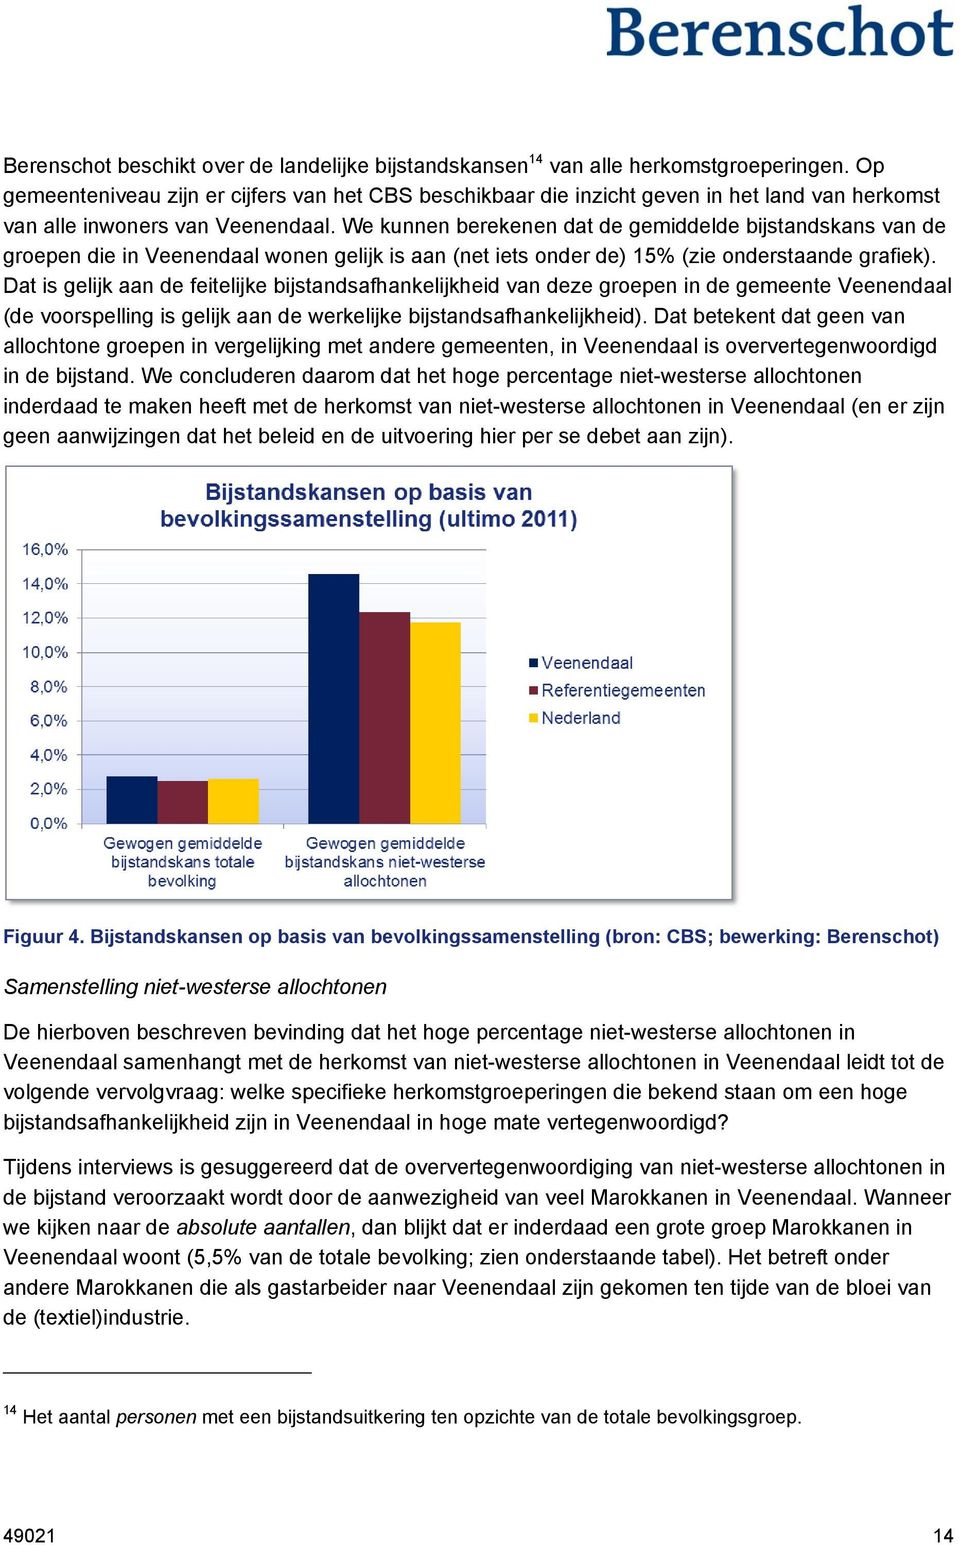 We kunnen berekenen dat de gemiddelde bijstandskans van de groepen die in Veenendaal wonen gelijk is aan (net iets onder de) 15% (zie onderstaande grafiek).